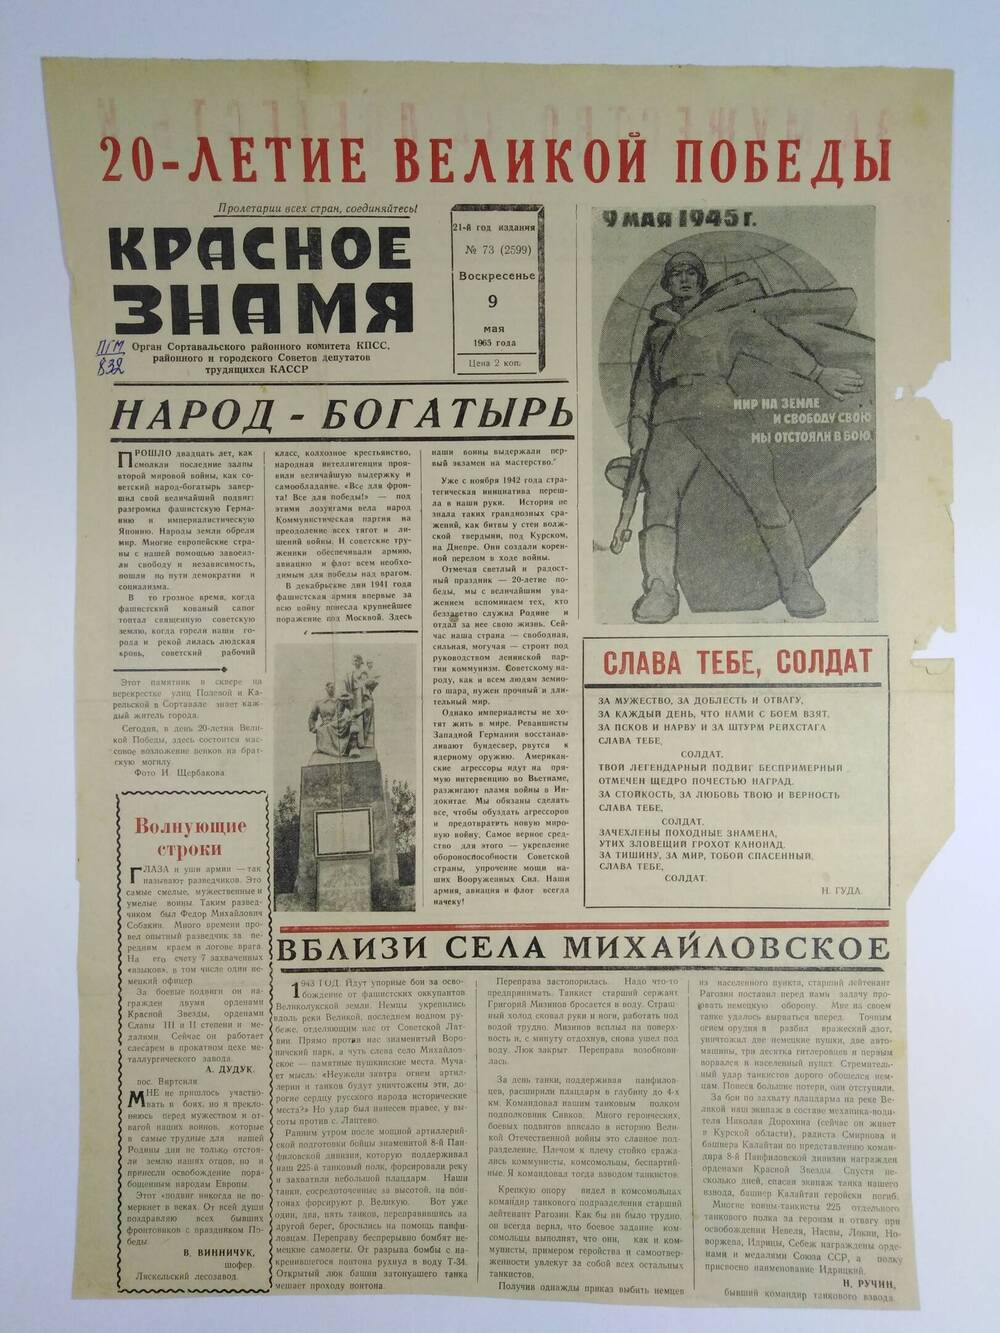 Газета (лист, с.1-2) Красное знамя №73(2599) от09.05.1965 г. с материалами, посвящёнными 20-летию Победы.